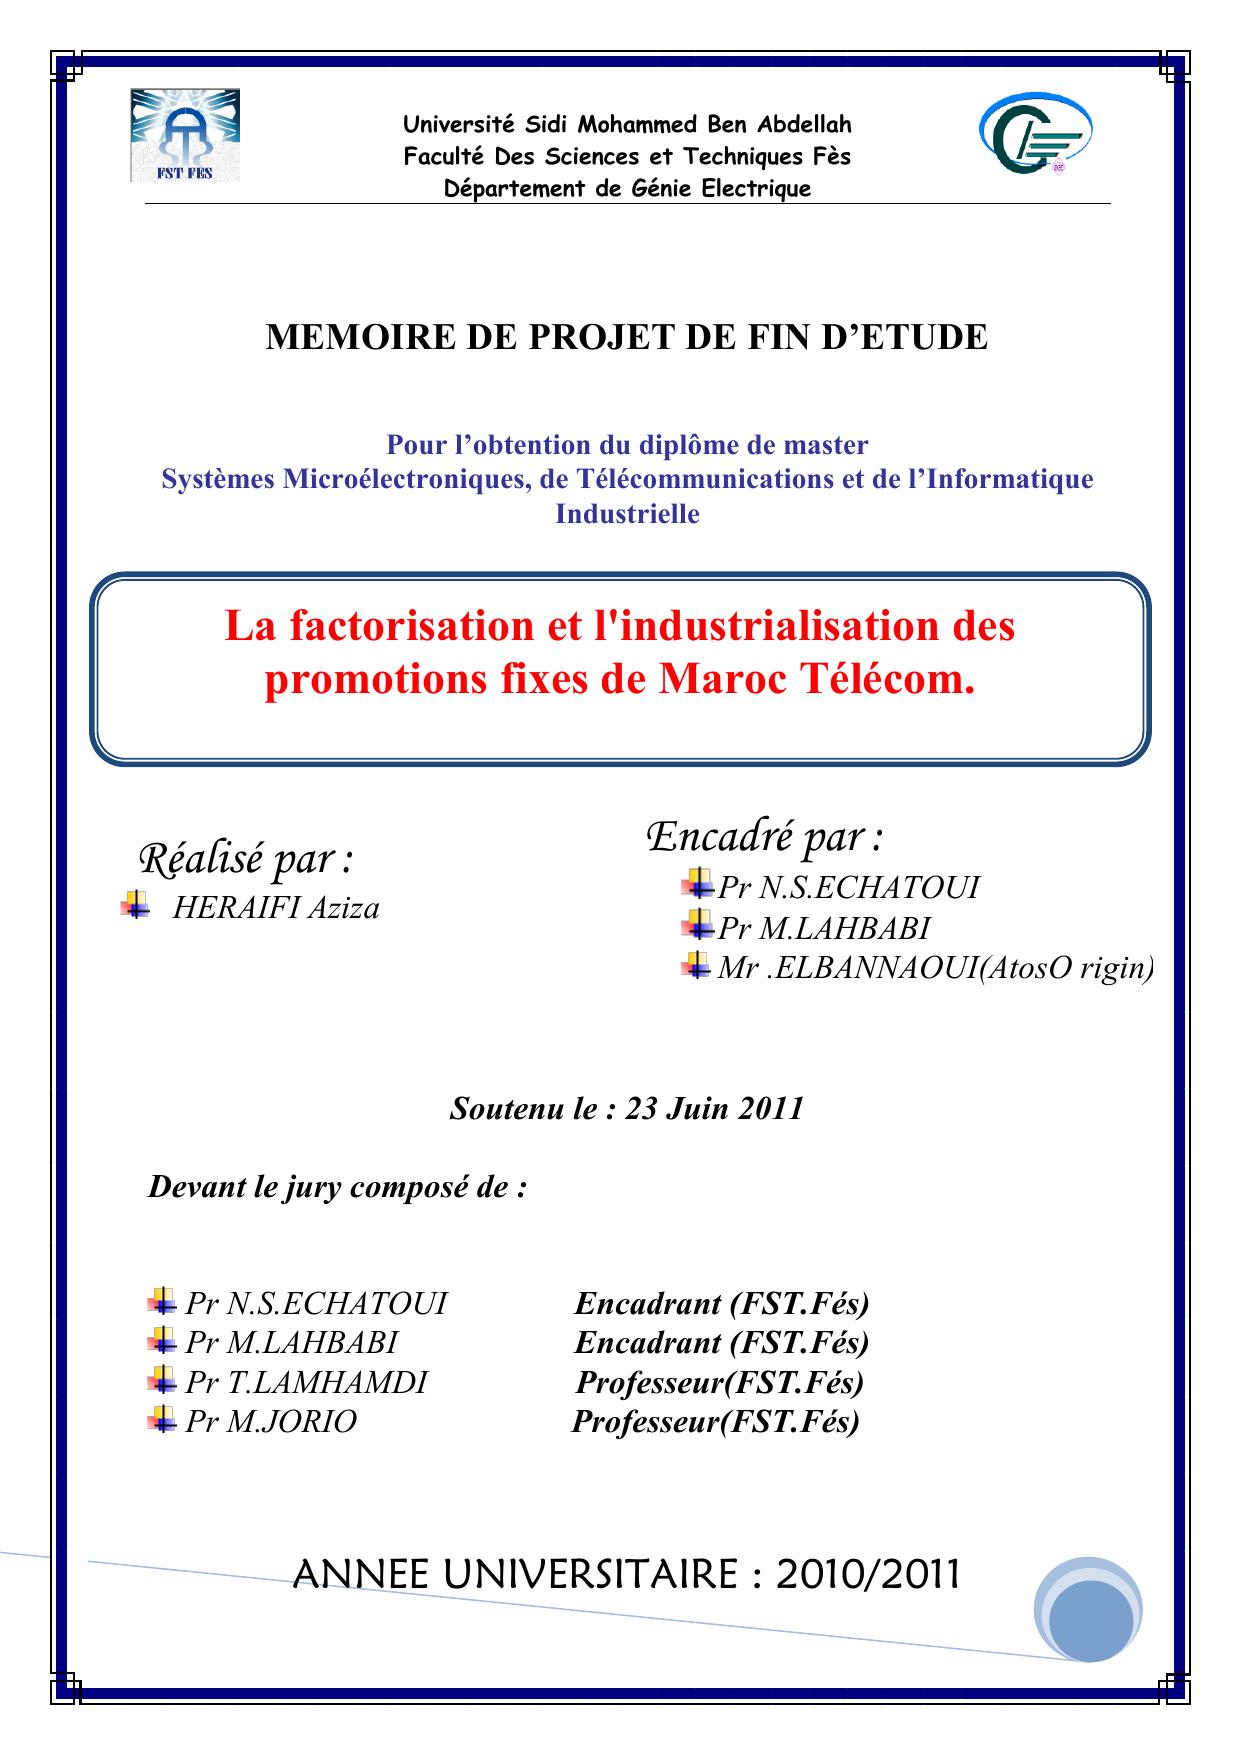 La factorisation et l'industrialisation des promotions fixes de Maroc Télécom